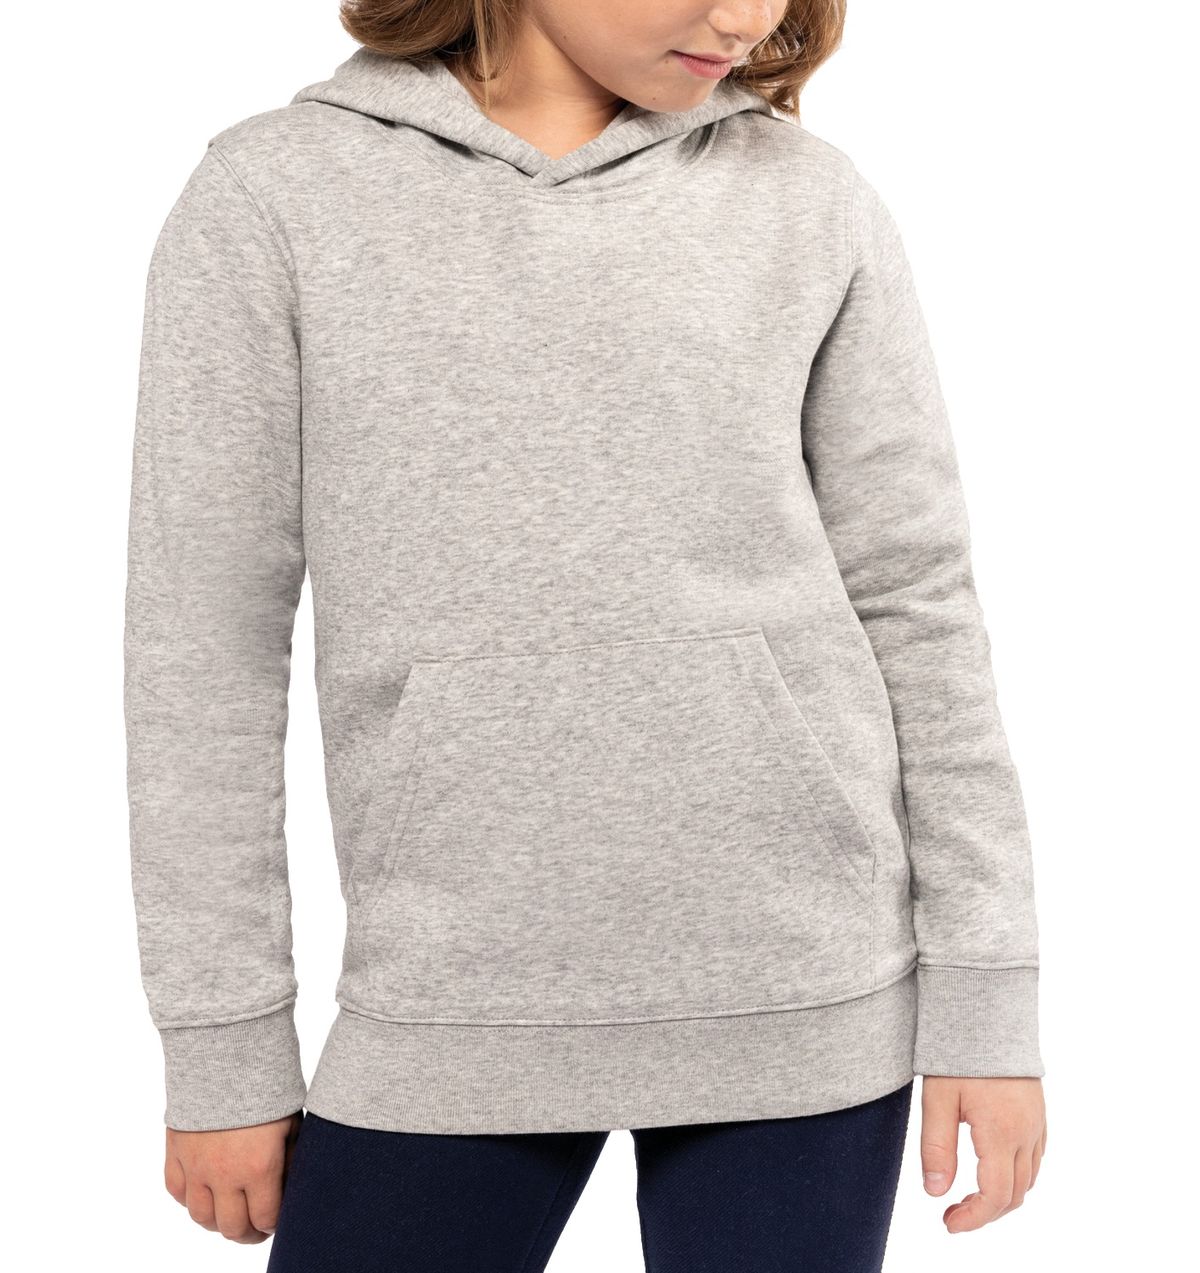 Imagen mockup-hoodie-enfant-premium